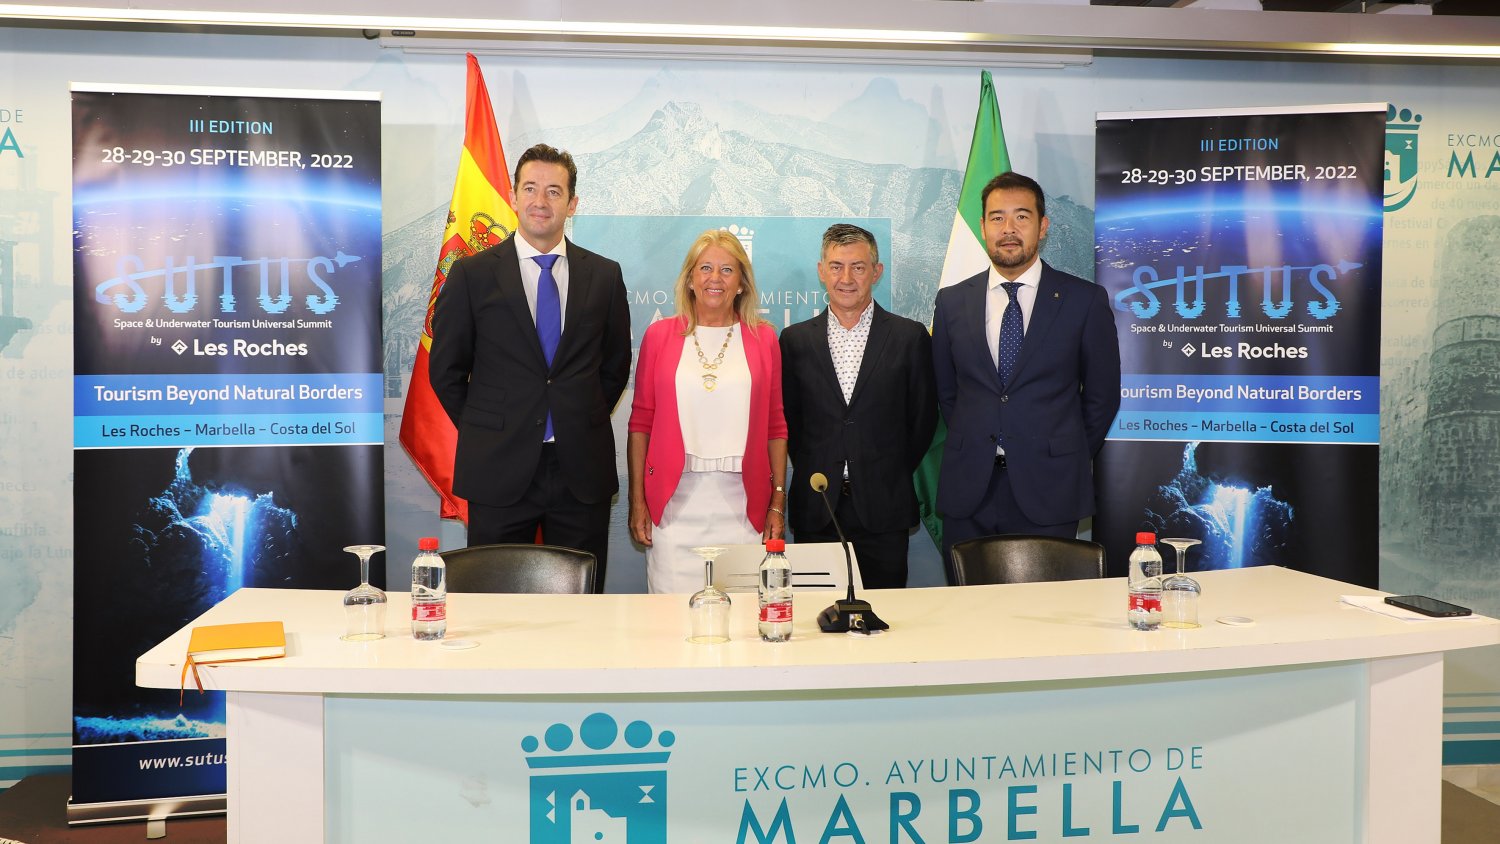 Marbella celebra la tercera edición del congreso SUTUS con los mayores expertos mundiales en turismo